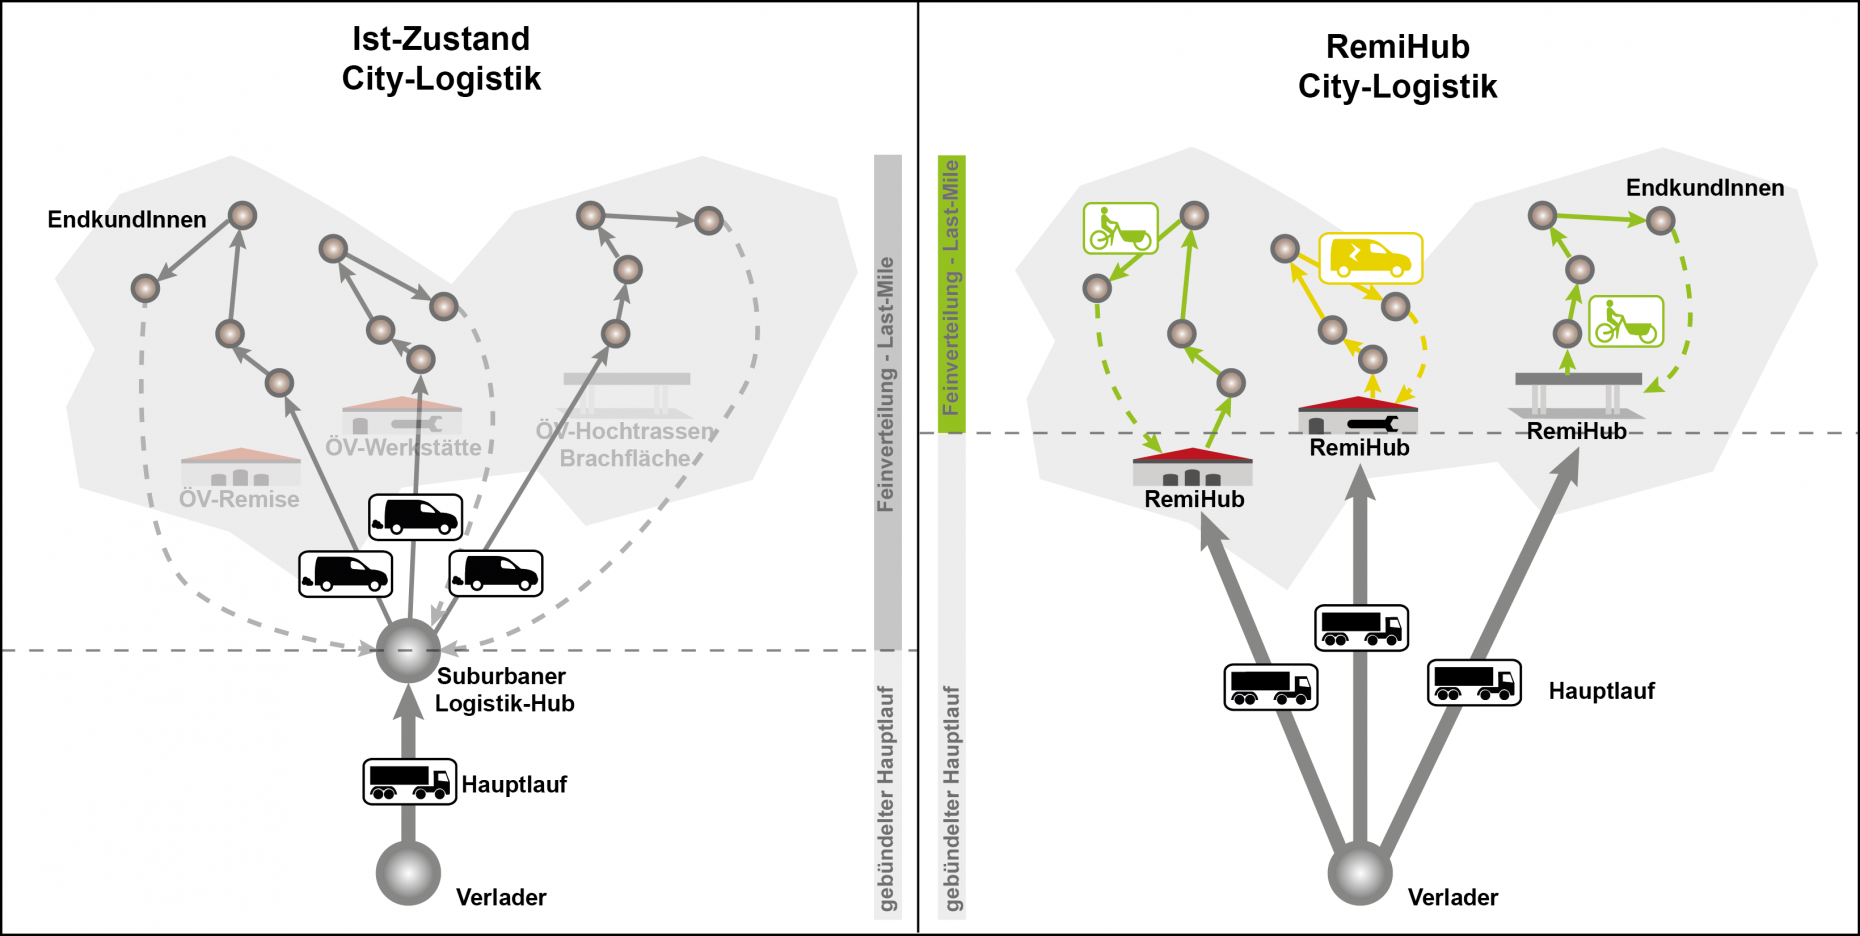 Im Bild sieht man skizzenhaft wie die Ergebnisse des Projekts RemiHub den städtischen Güterverkehr optimieren könnten.